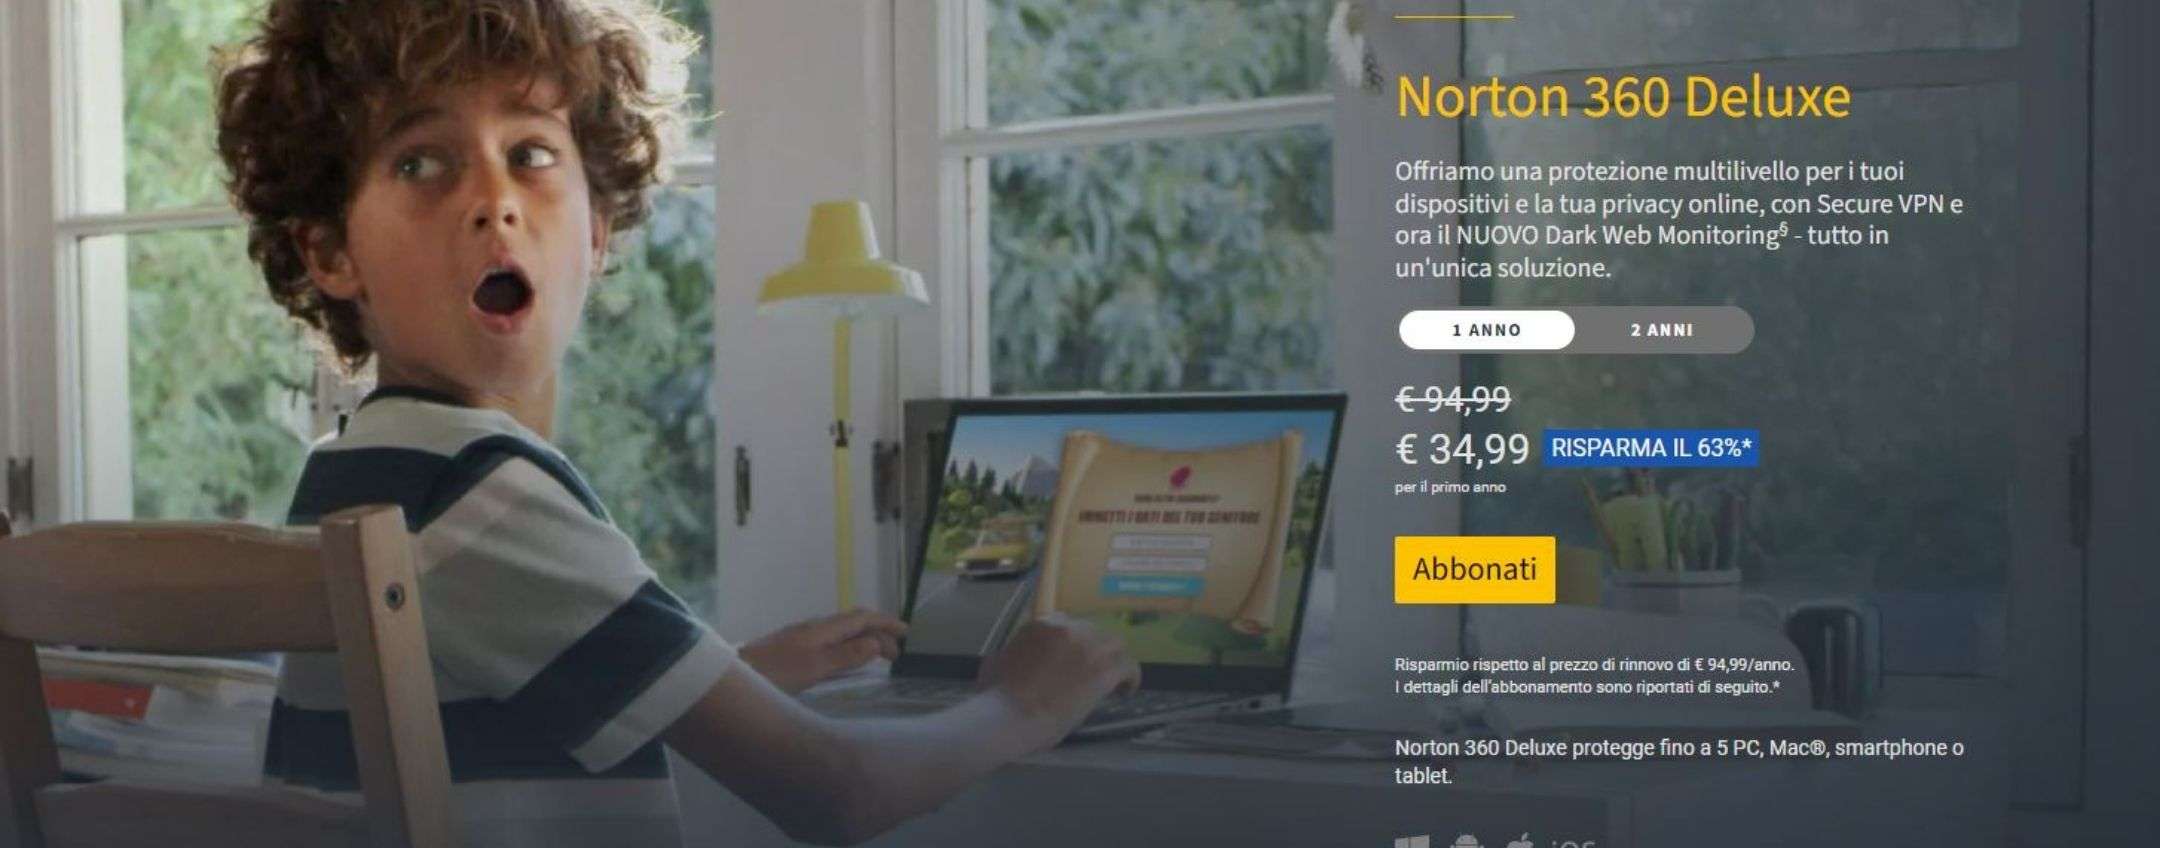 Norton 360 Deluxe: protezione internet e VPN tutto compreso a soli 34,99€